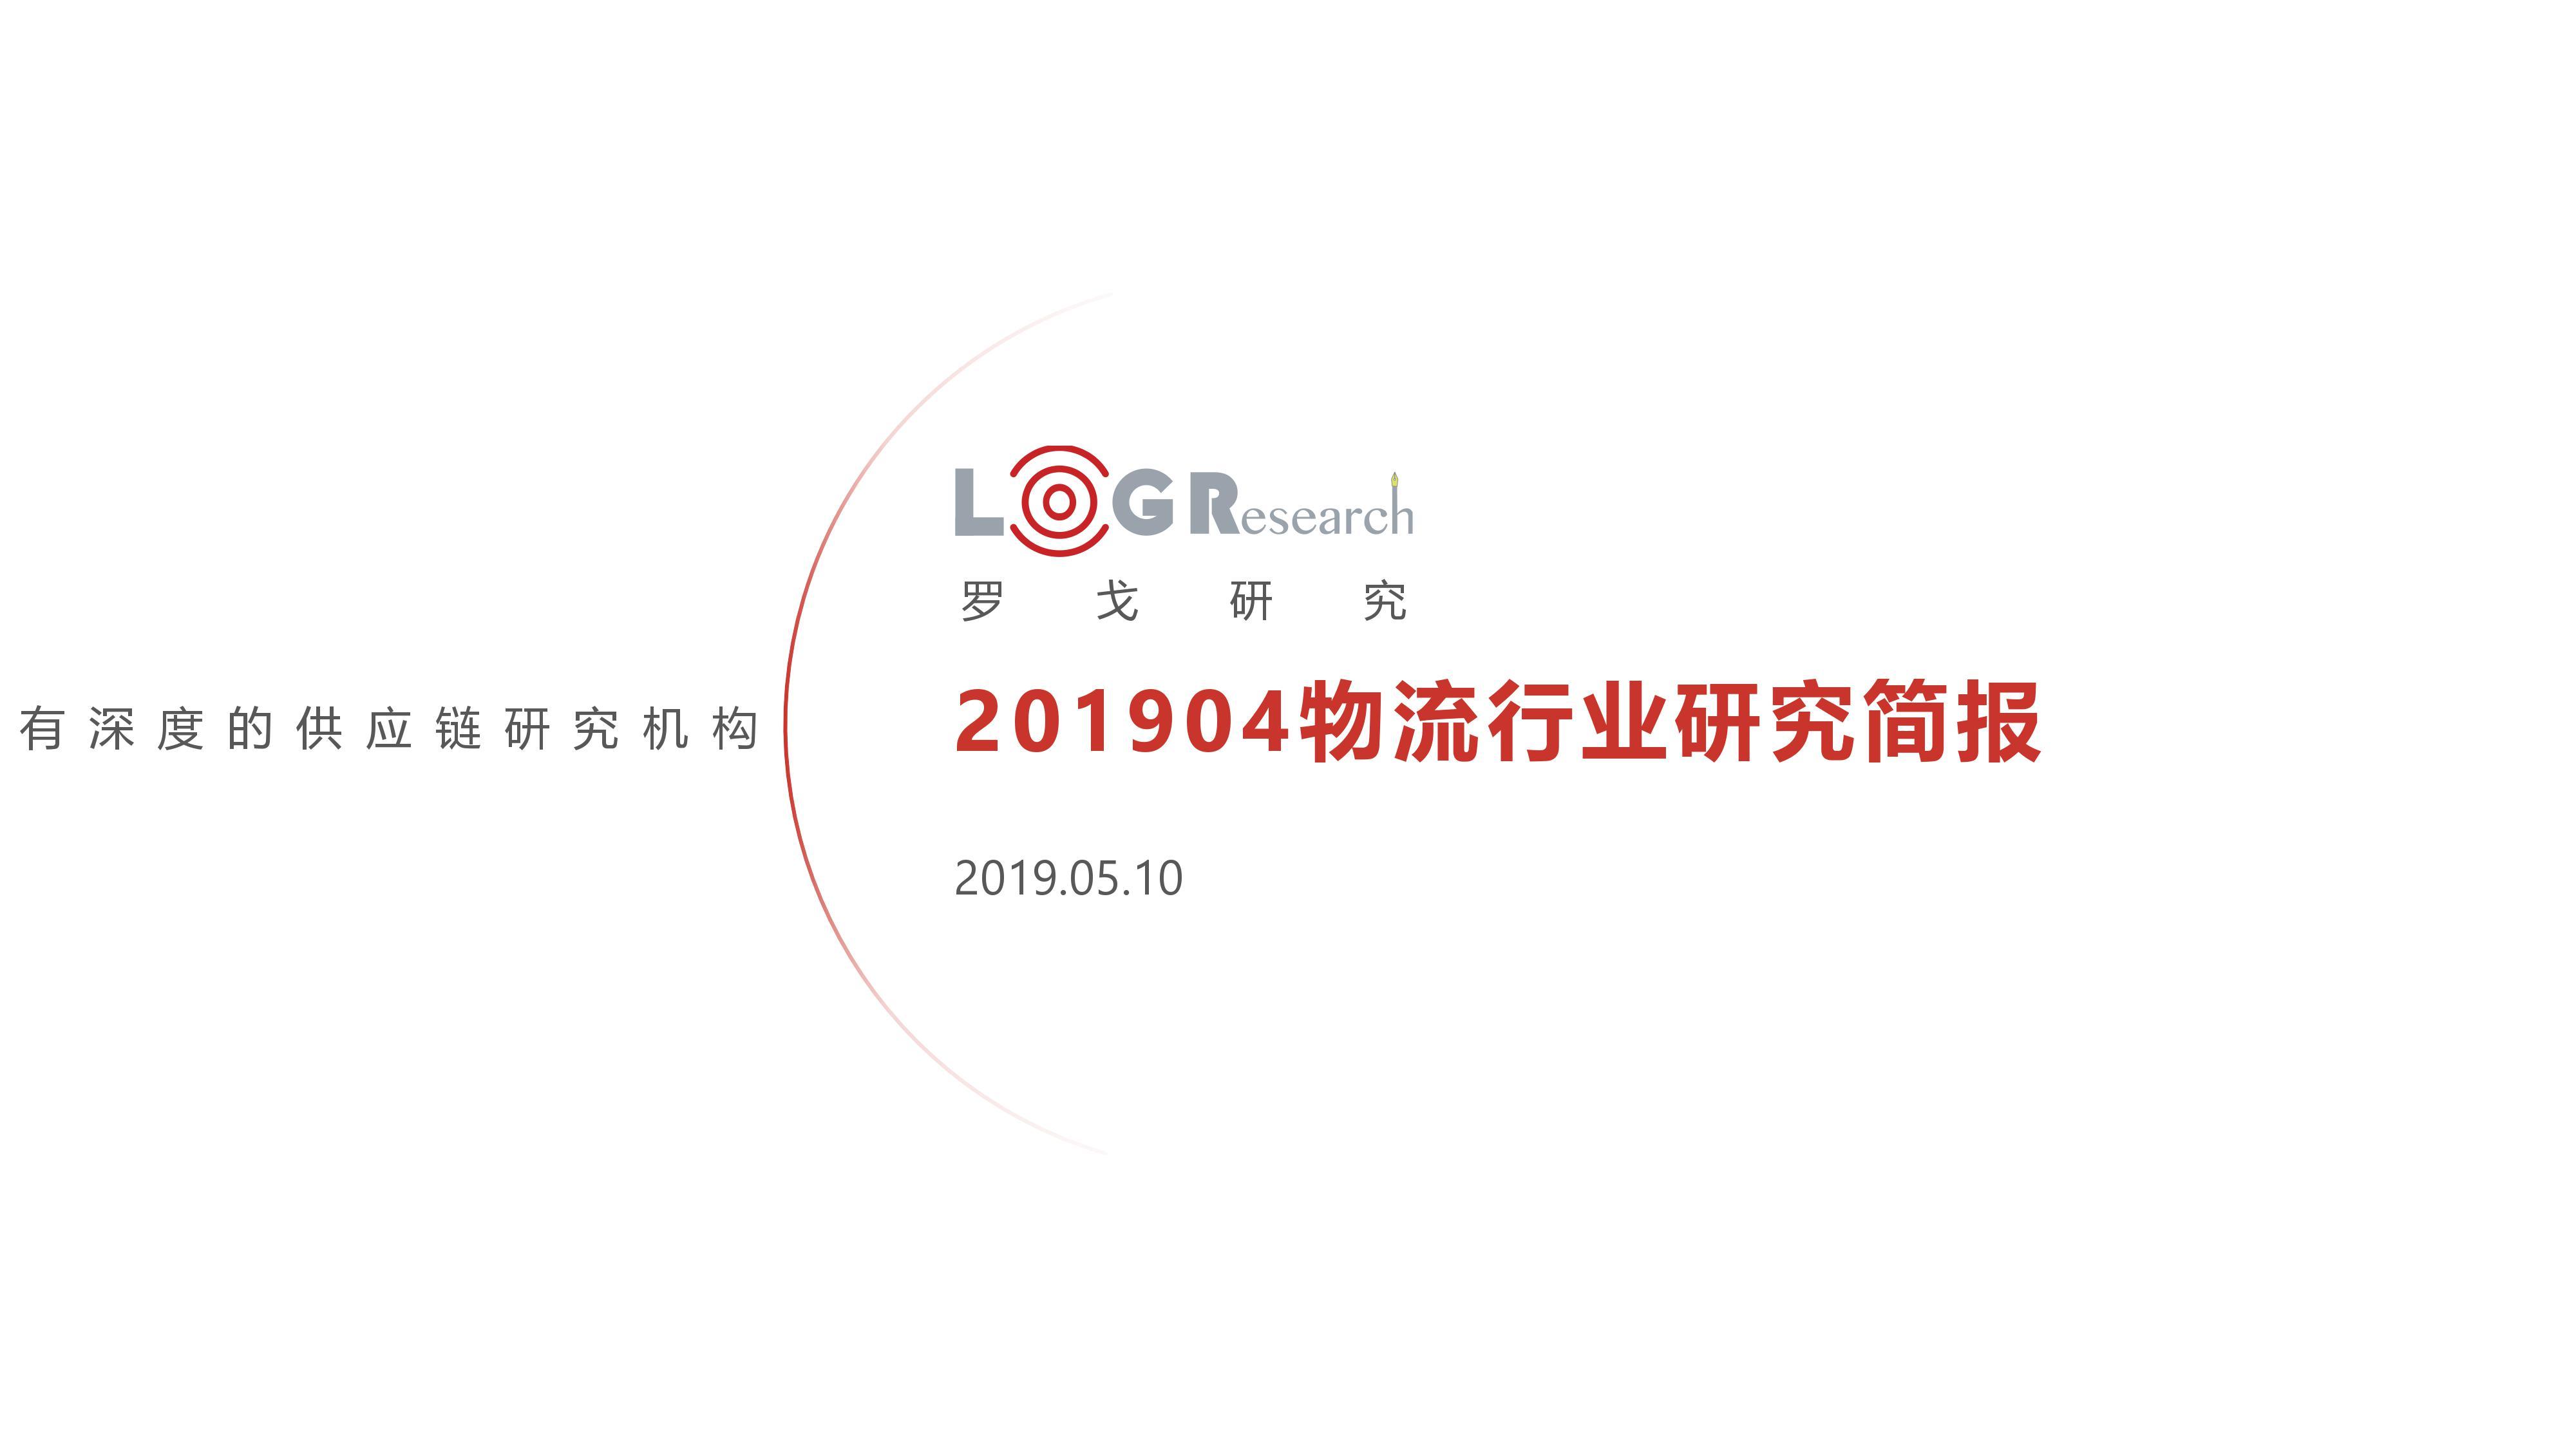 2019-04物流行业简报-个人会员版